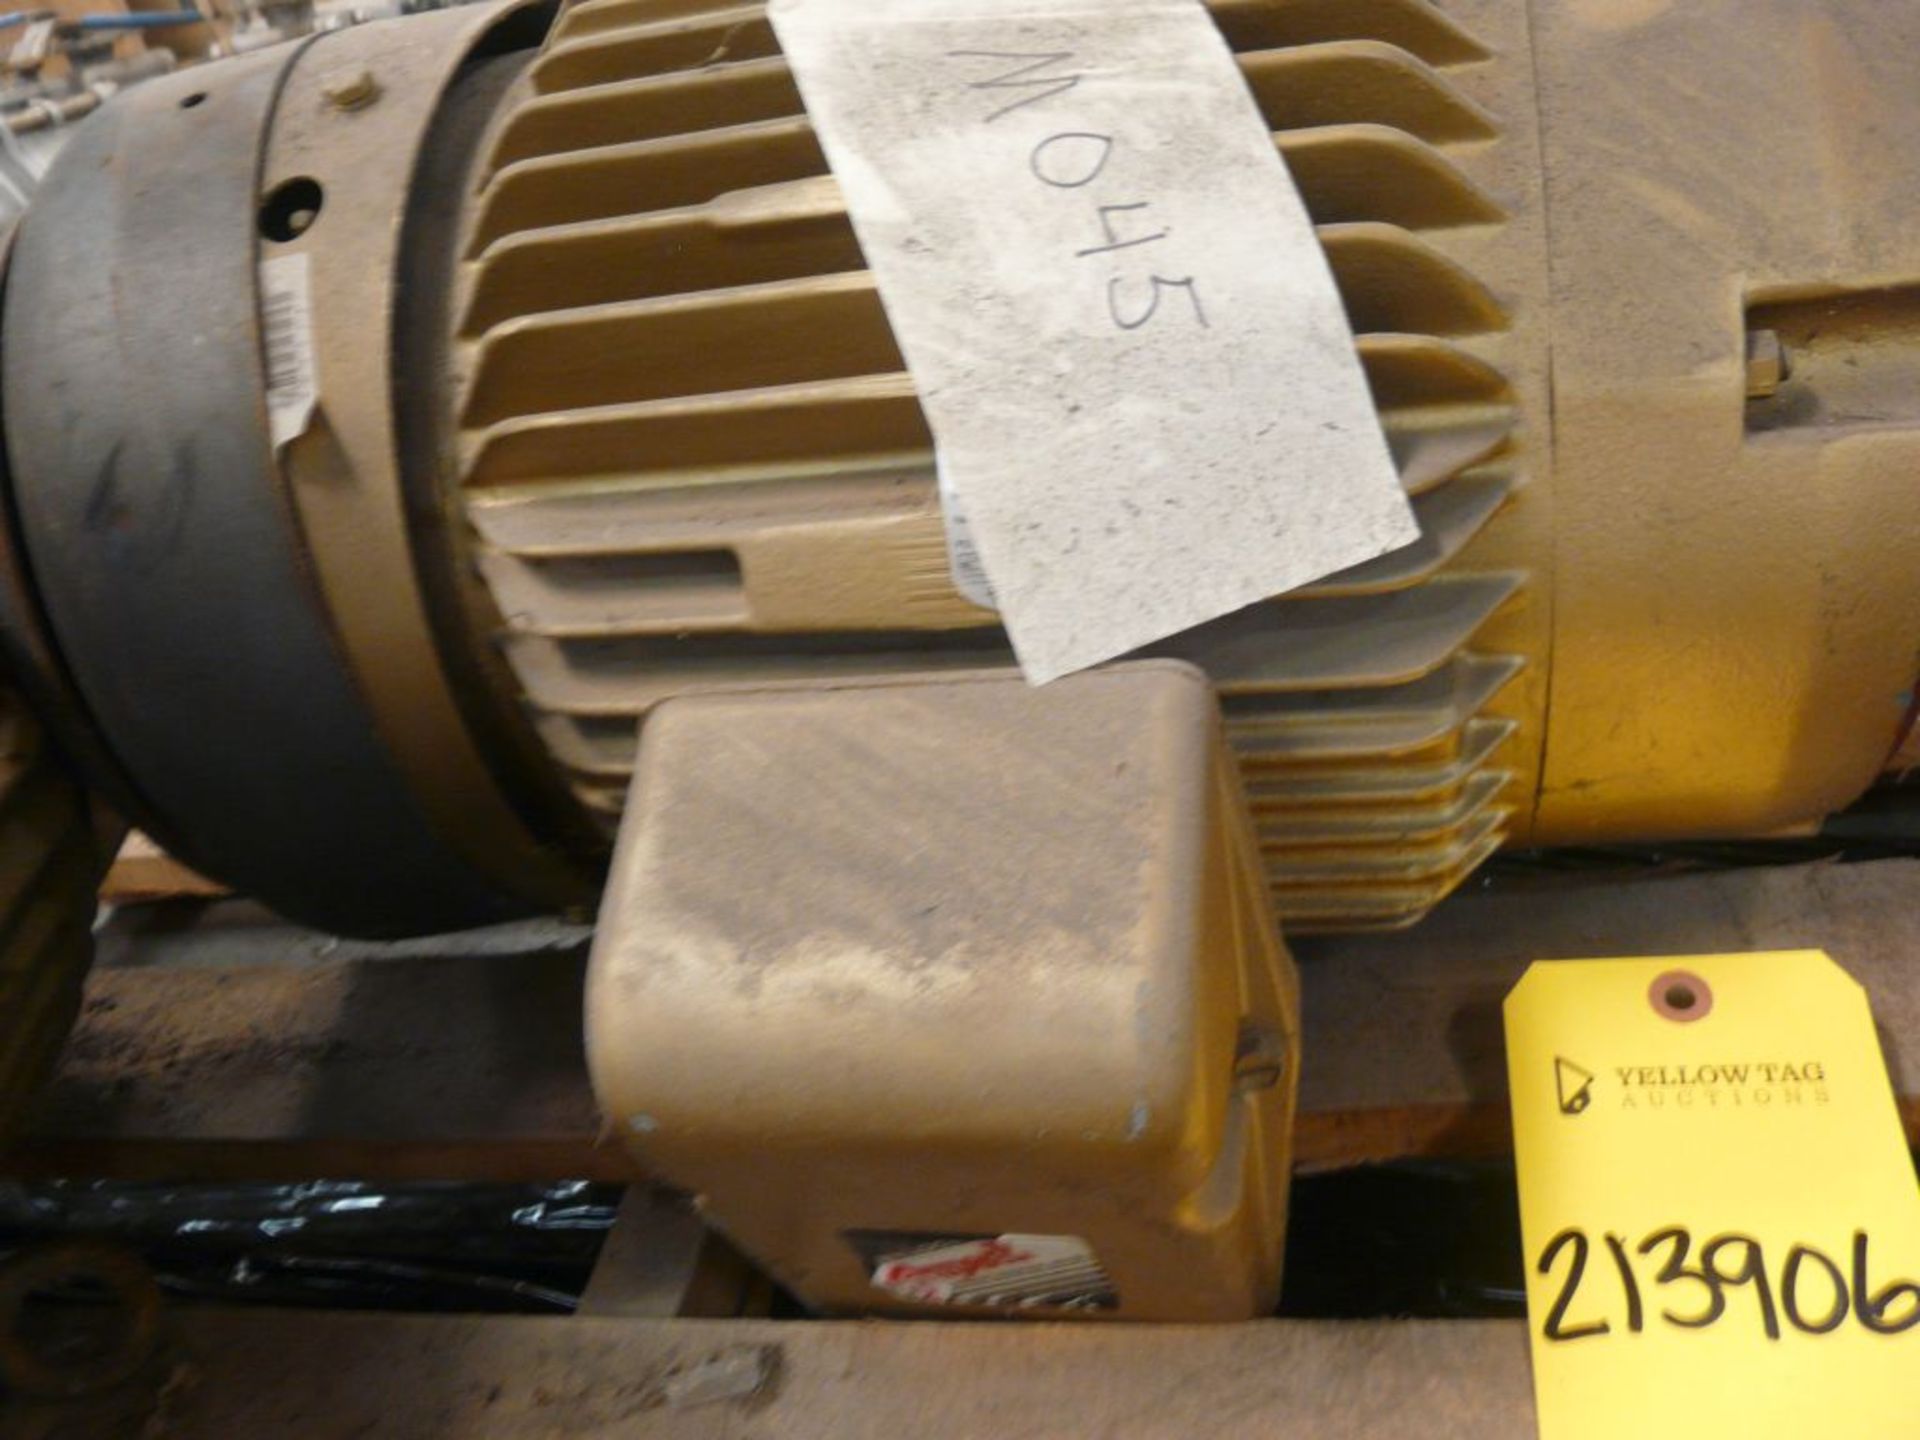 Baldor Super-E 10 HP Motor - Cat No. VEM3774T; 10 HP; 460V; 1780 RPM; Frame: 215TC; 3PH - Image 4 of 5